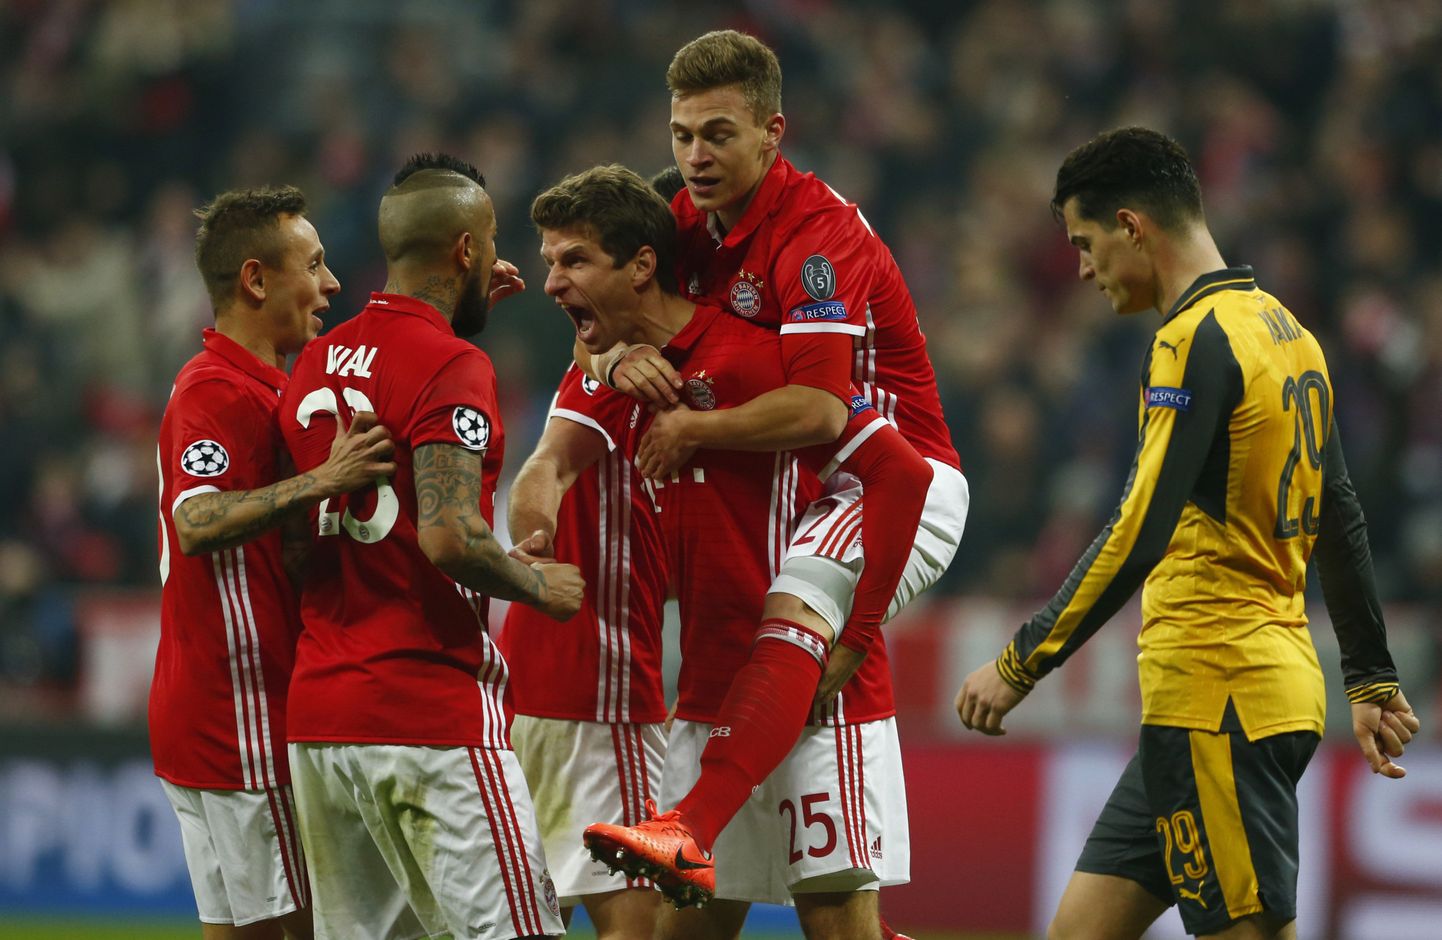 Bayerni mängijad juubeldavad, Arsenali poolkaitsja Granit Xhaka lahkub, pea norus.